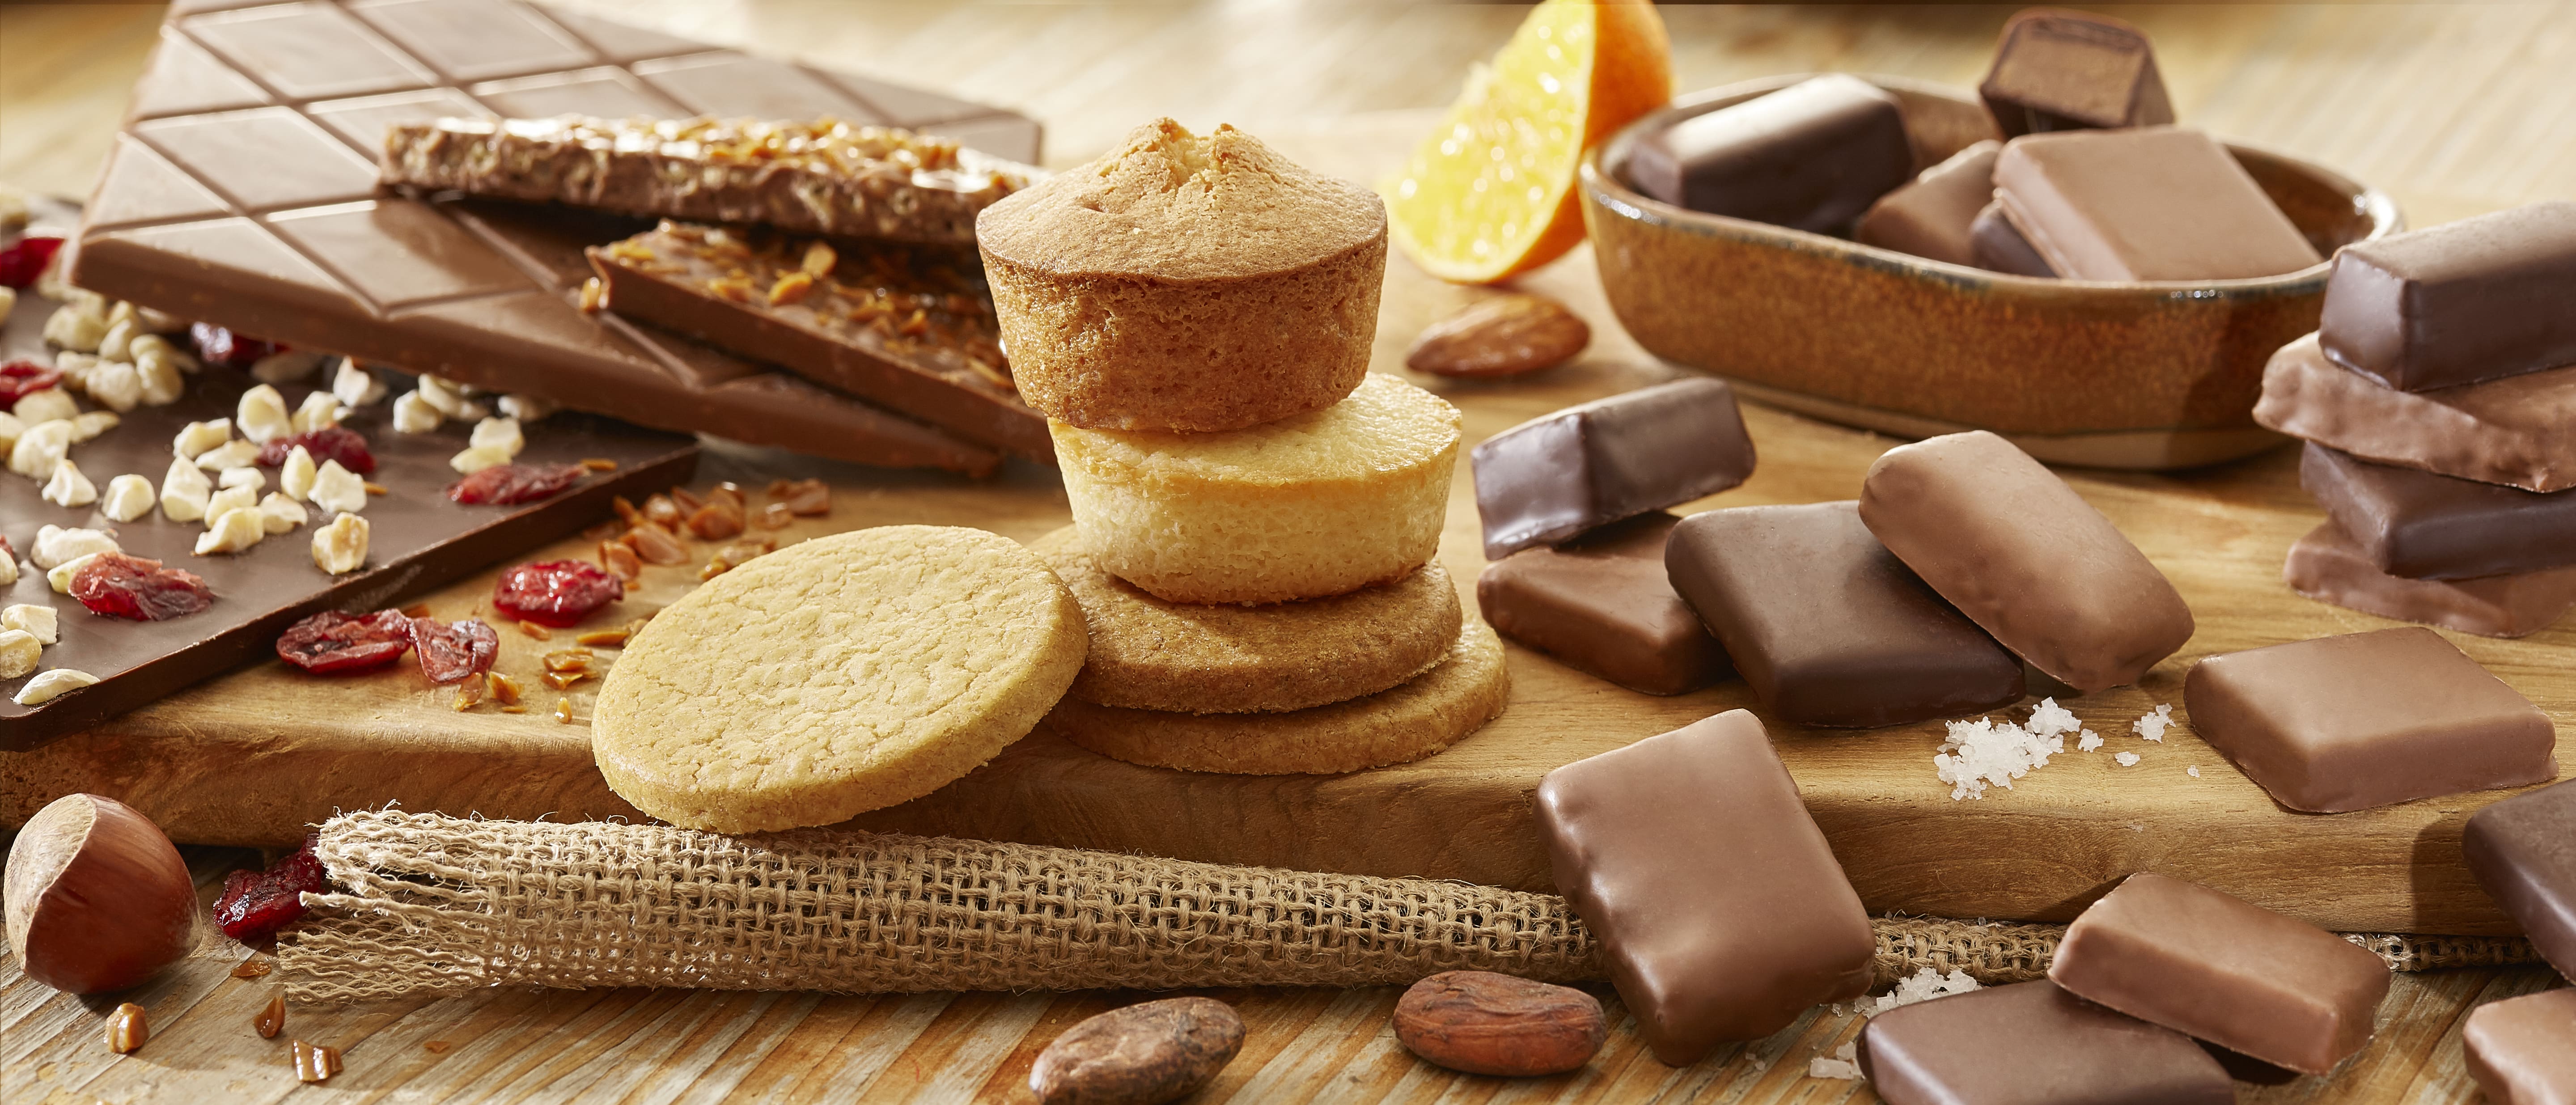 Chocolats, Biscuits Réauté Chocolat